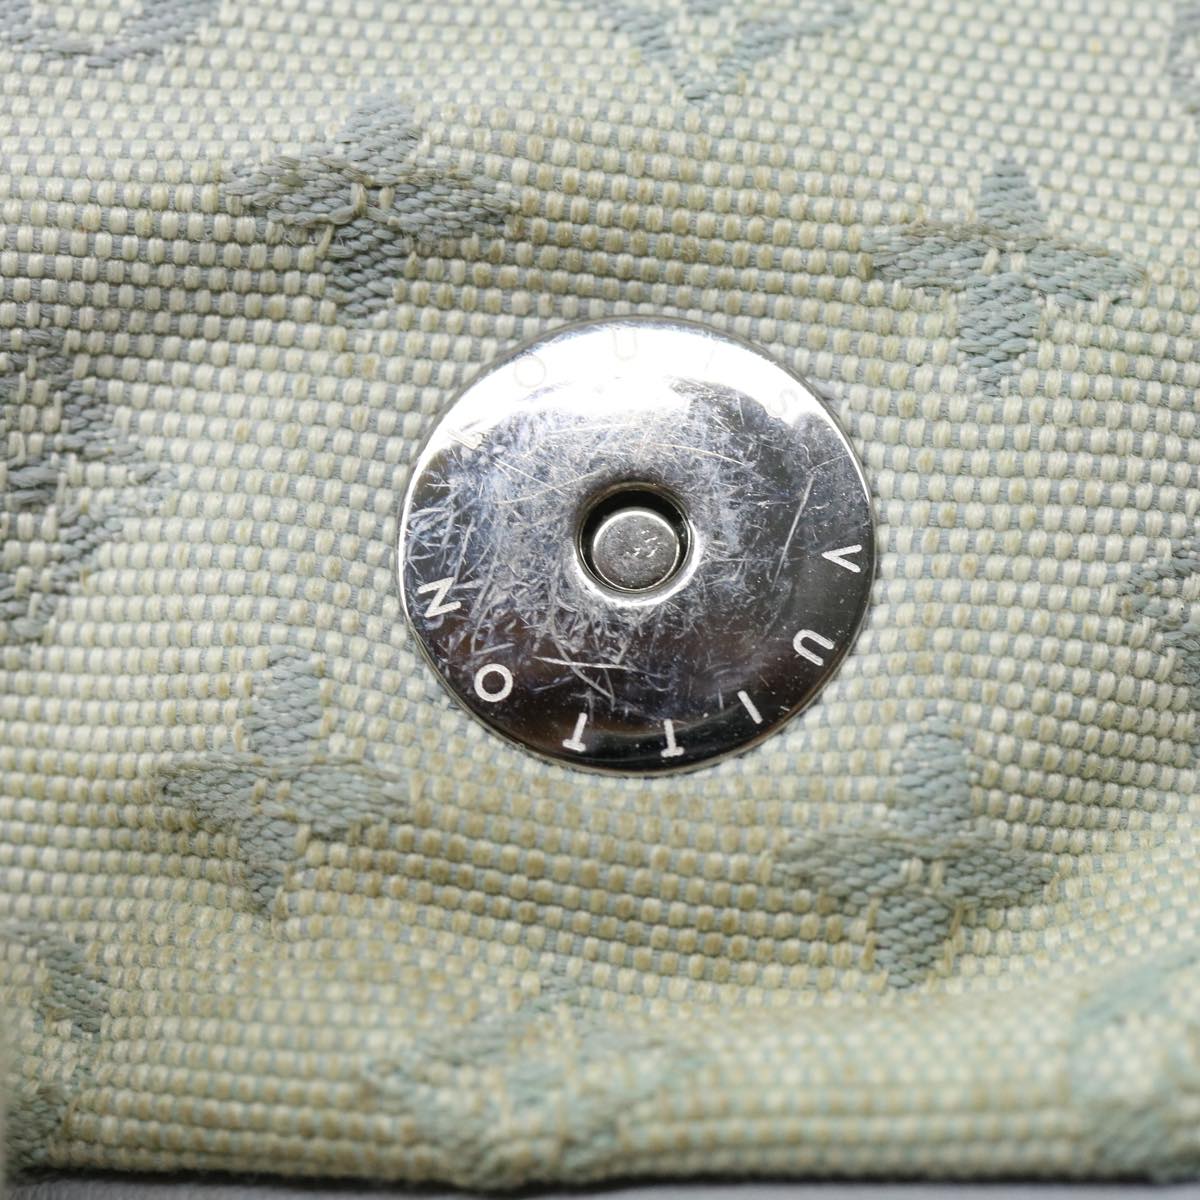 LOUIS VUITTON Monogram Mini Conte du Fees Musette Bag M92279 Auth bs1867